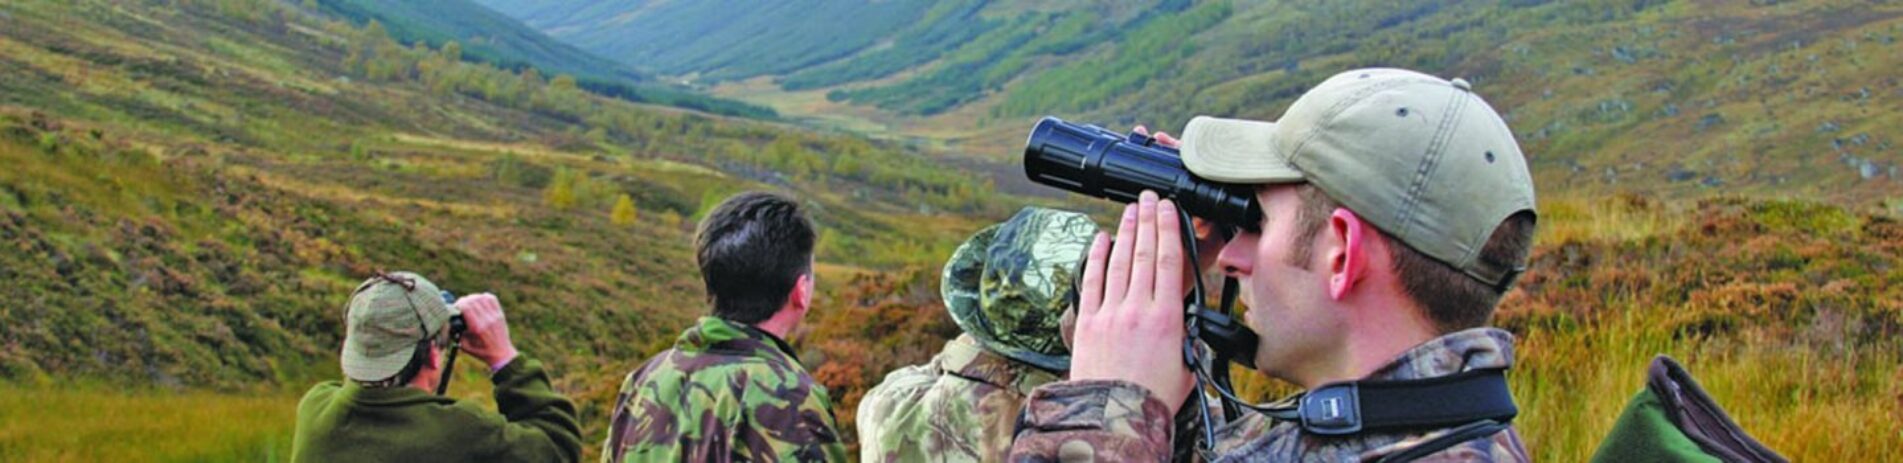 deer-stalkers-in-khaki-camouflage-clothes-looking-through-binoculars